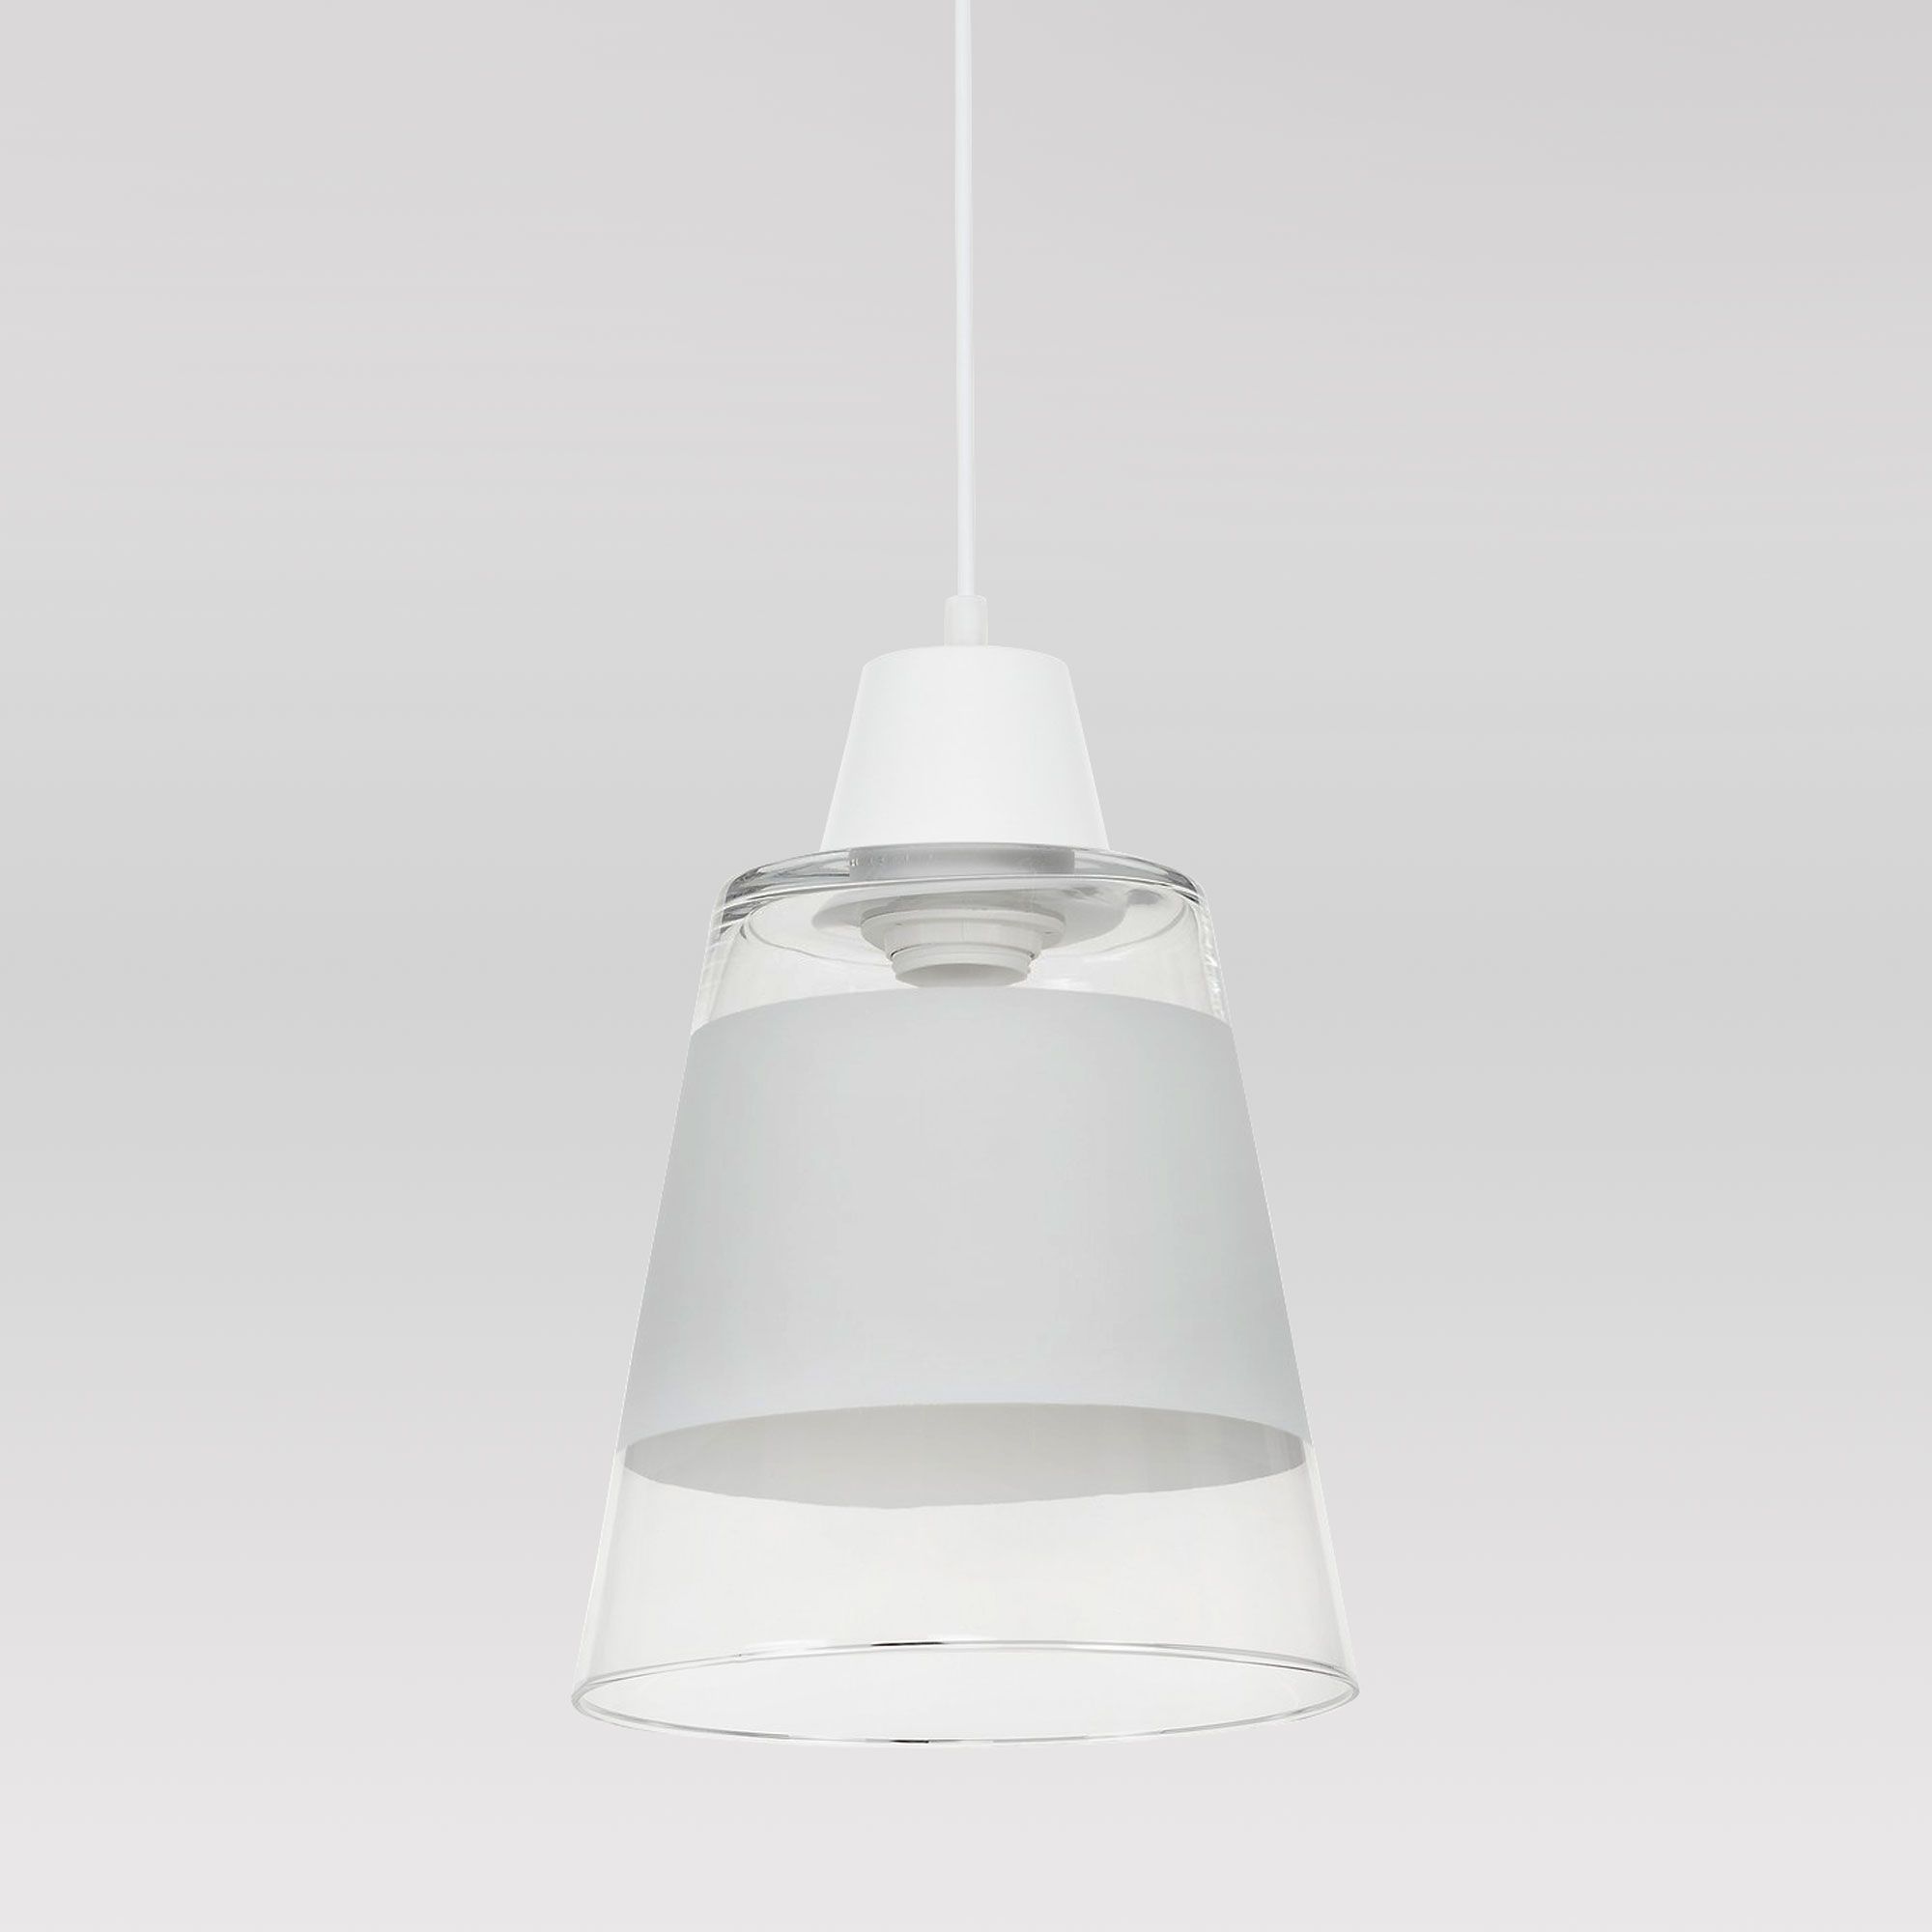 Белый подвесной светильник со стеклянным плафоном TK Lighting Trick 939 Trick. Фото 1